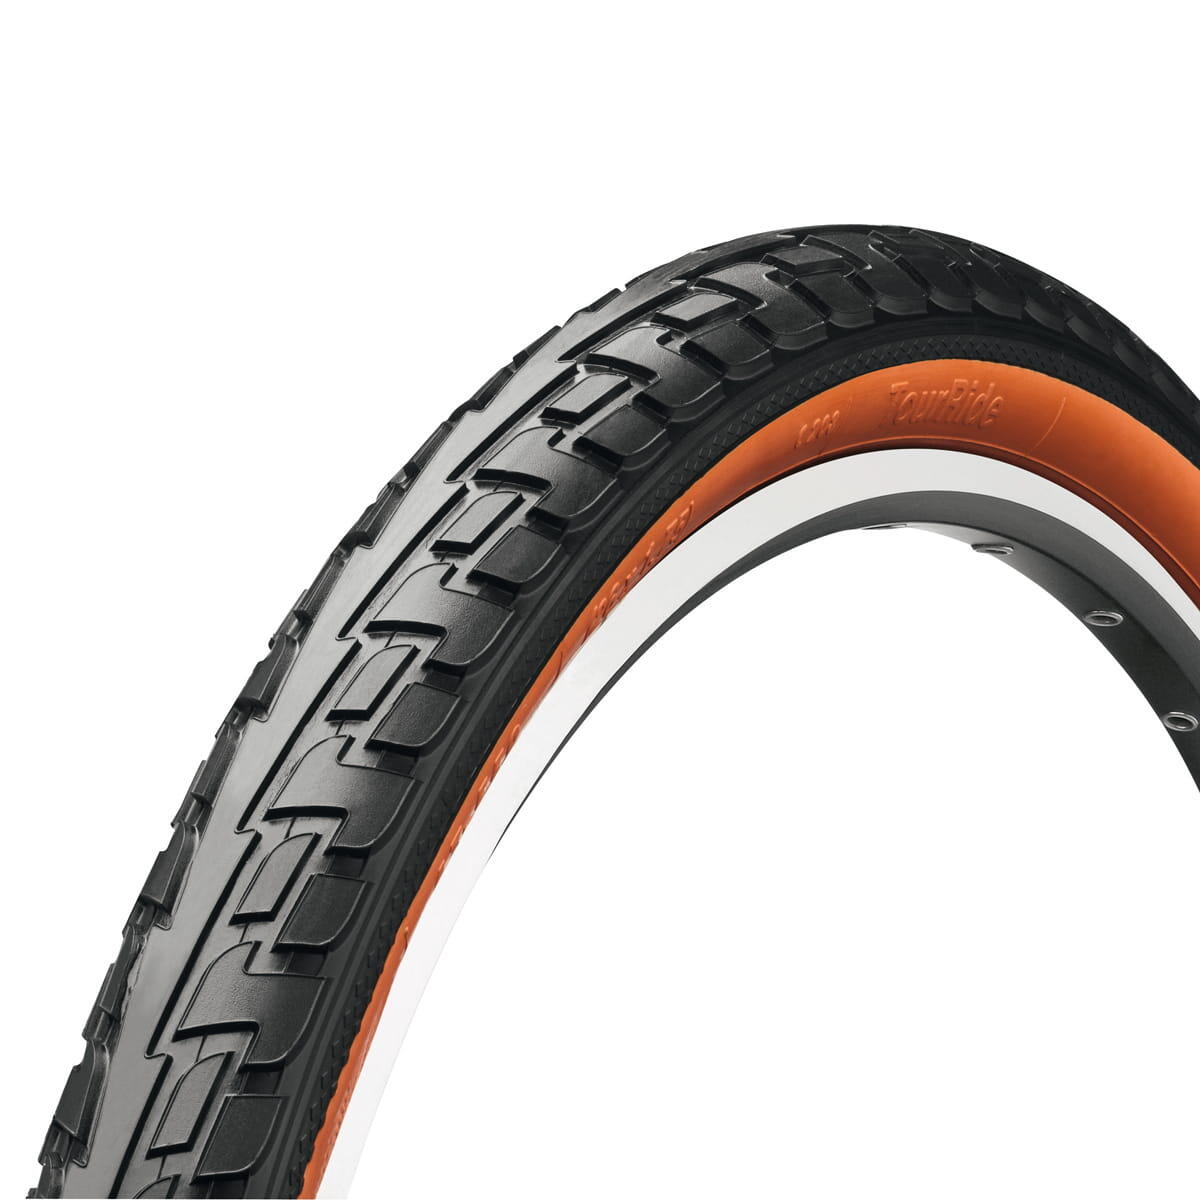 RIDE Tour Reflex Tyre-Wire Bead Urban Black/Black Reflex 700 X 47C (45C) 4/5